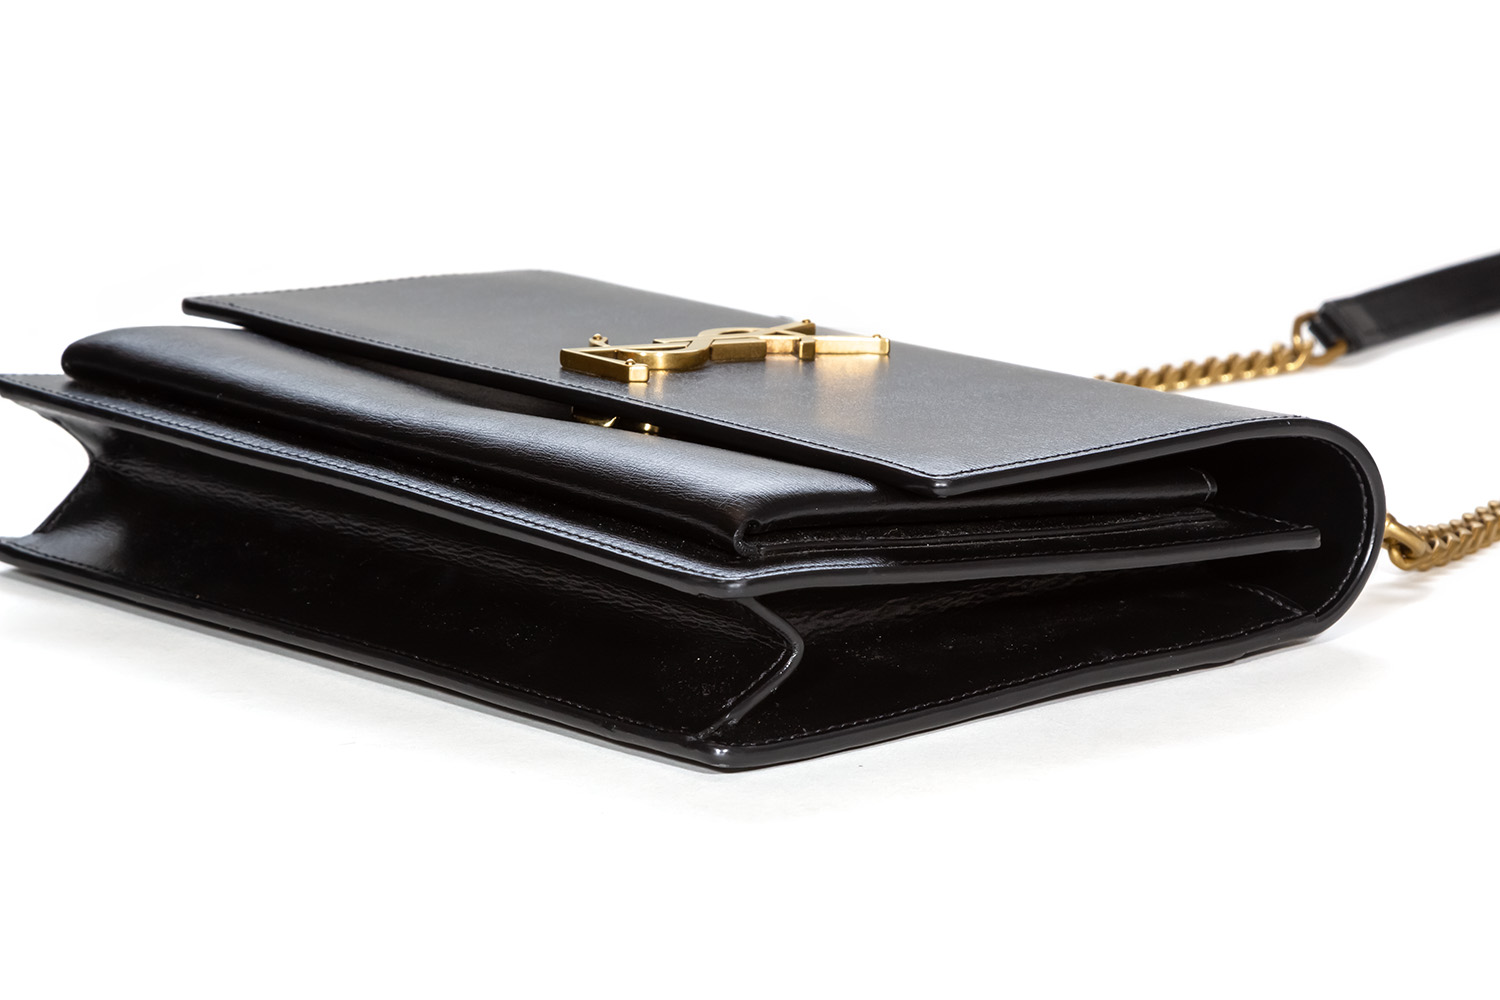 SAINT LAURENT Sunset medium leather cross-body bag BLACK – Top Quality Yves  Saint Laurent Bags Shop